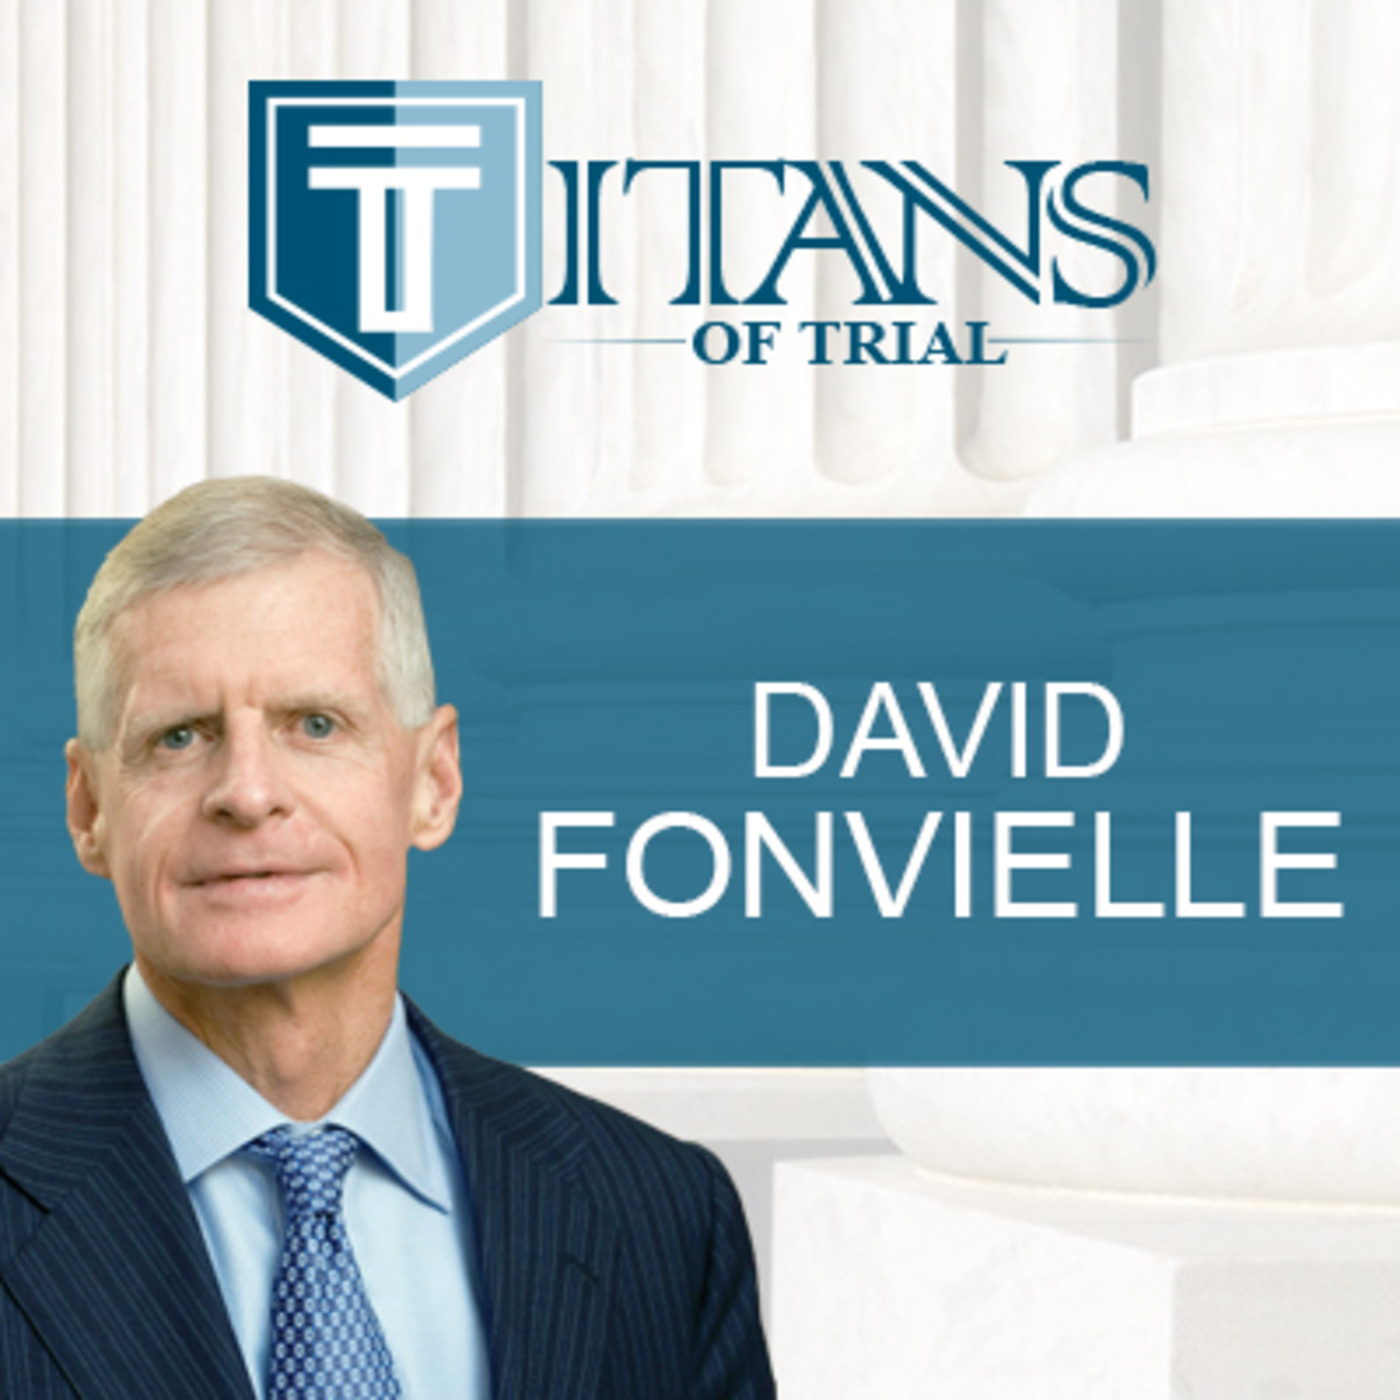 Titans of Trial – David Fonvielle